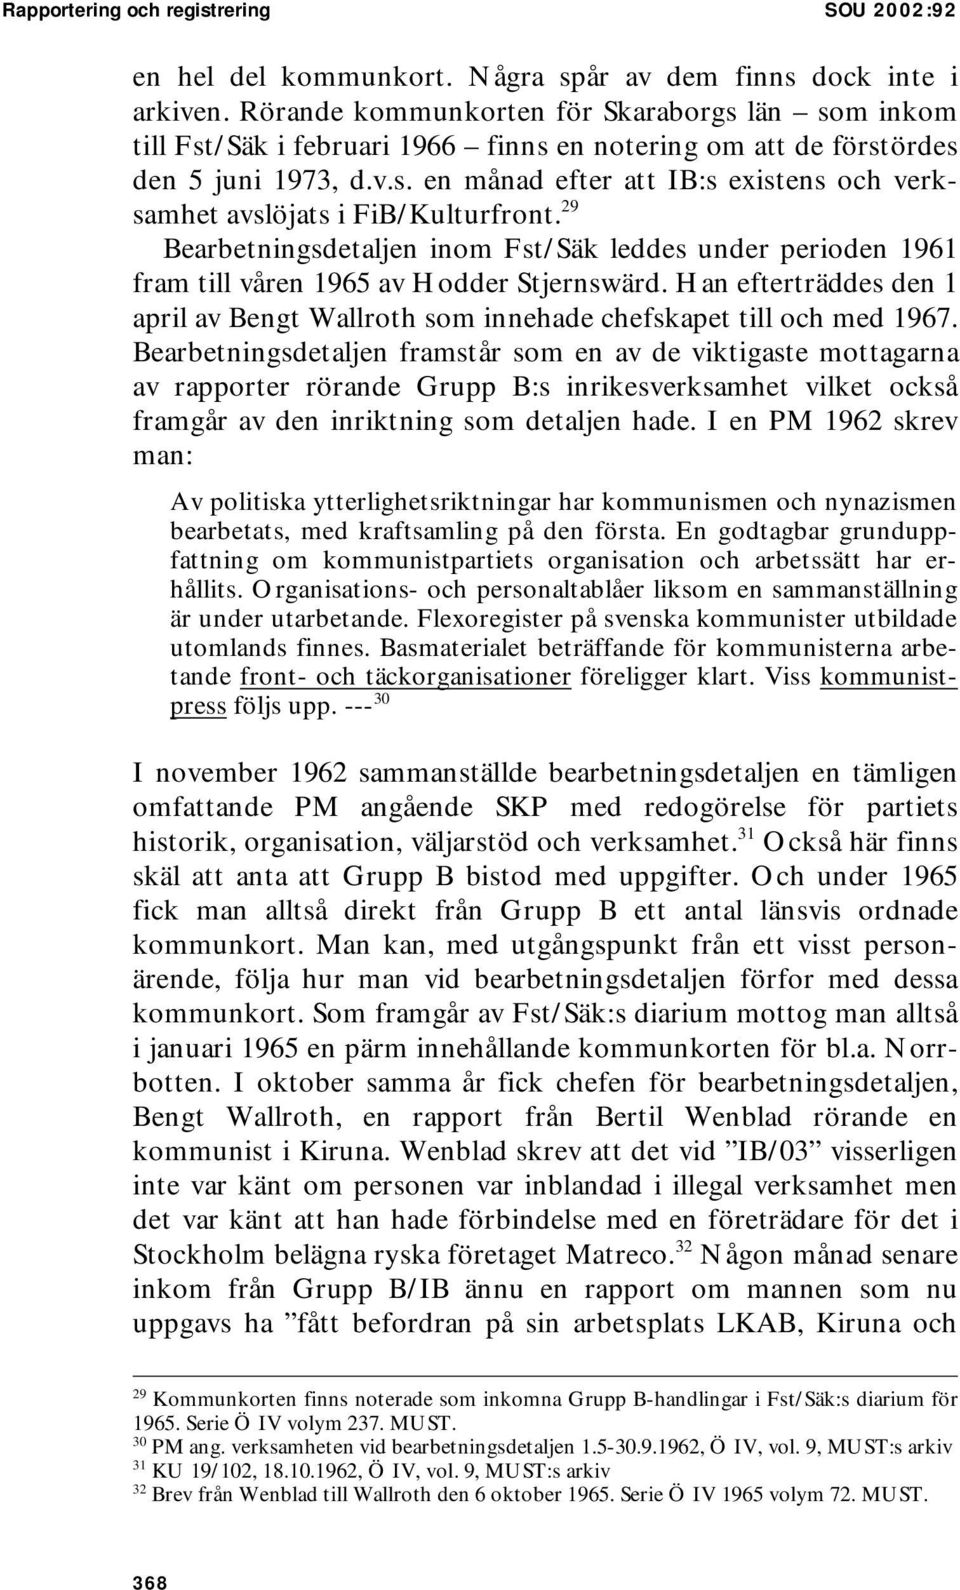 29 Bearbetningsdetaljen inom Fst/Säk leddes under perioden 1961 fram till våren 1965 av Hodder Stjernswärd. Han efterträddes den 1 april av Bengt Wallroth som innehade chefskapet till och med 1967.